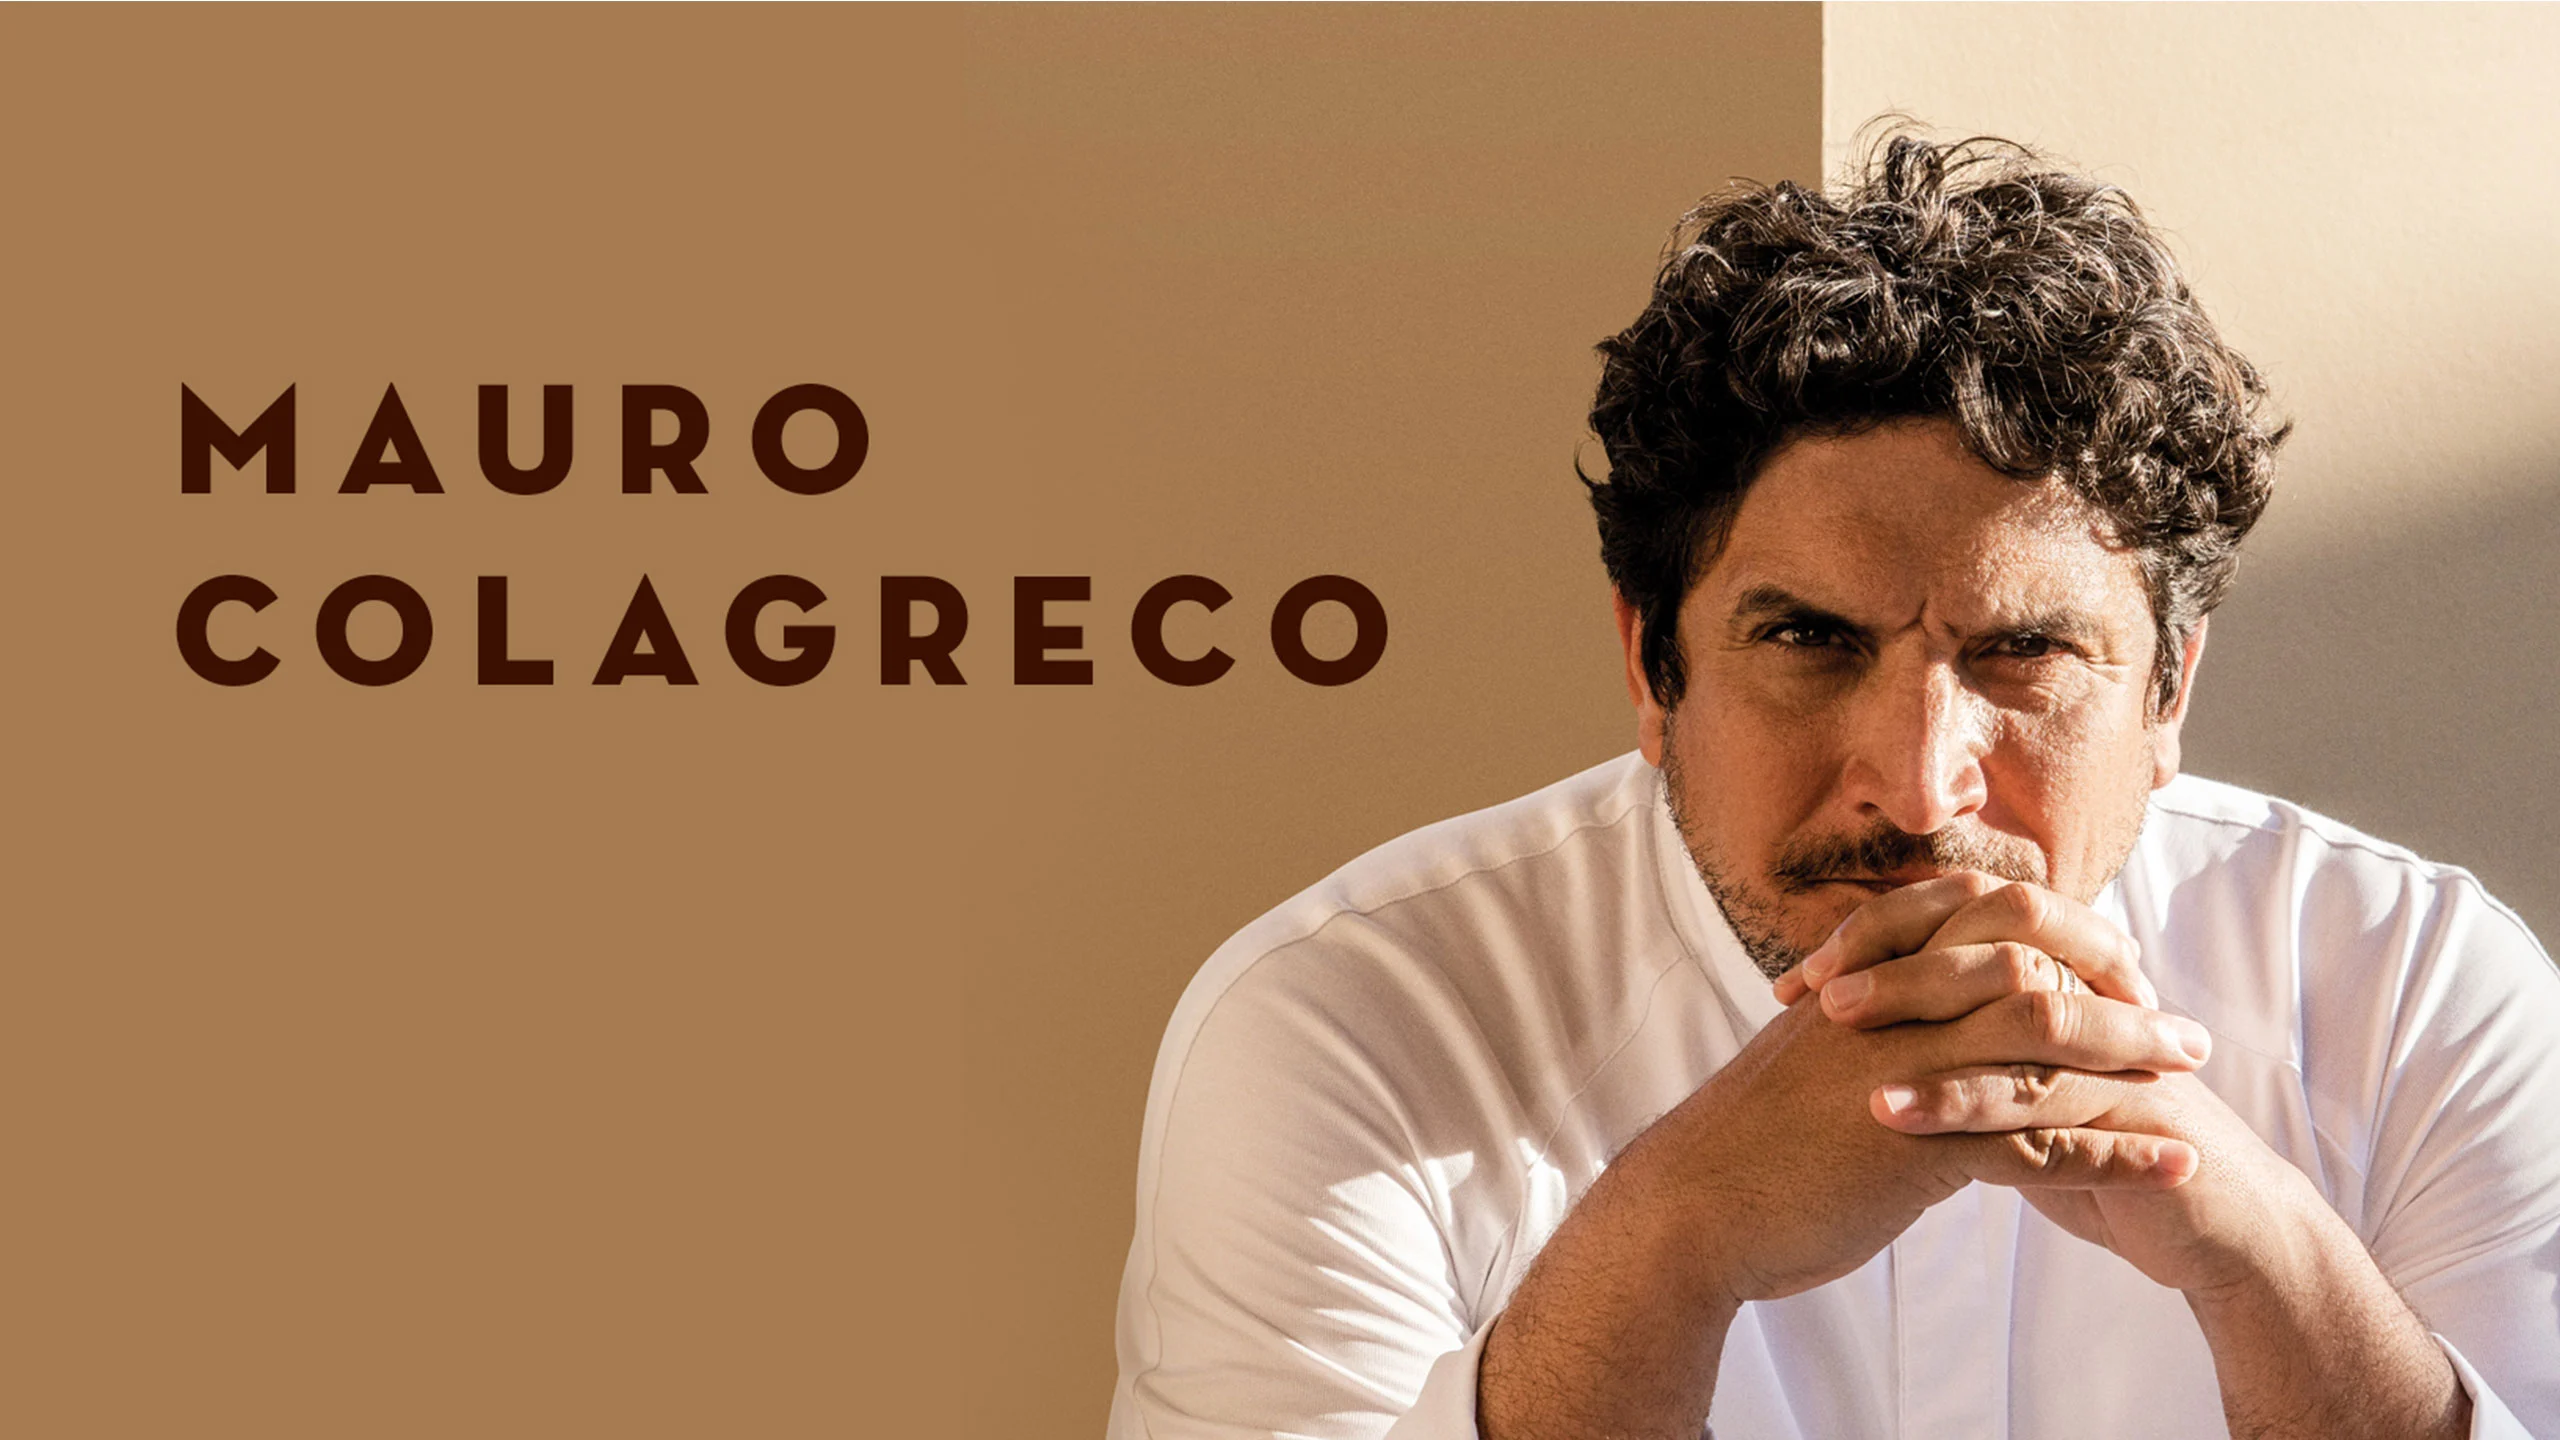 Mauro Colagreco: visión por la gastronomía y el cuidado del medio ambiente